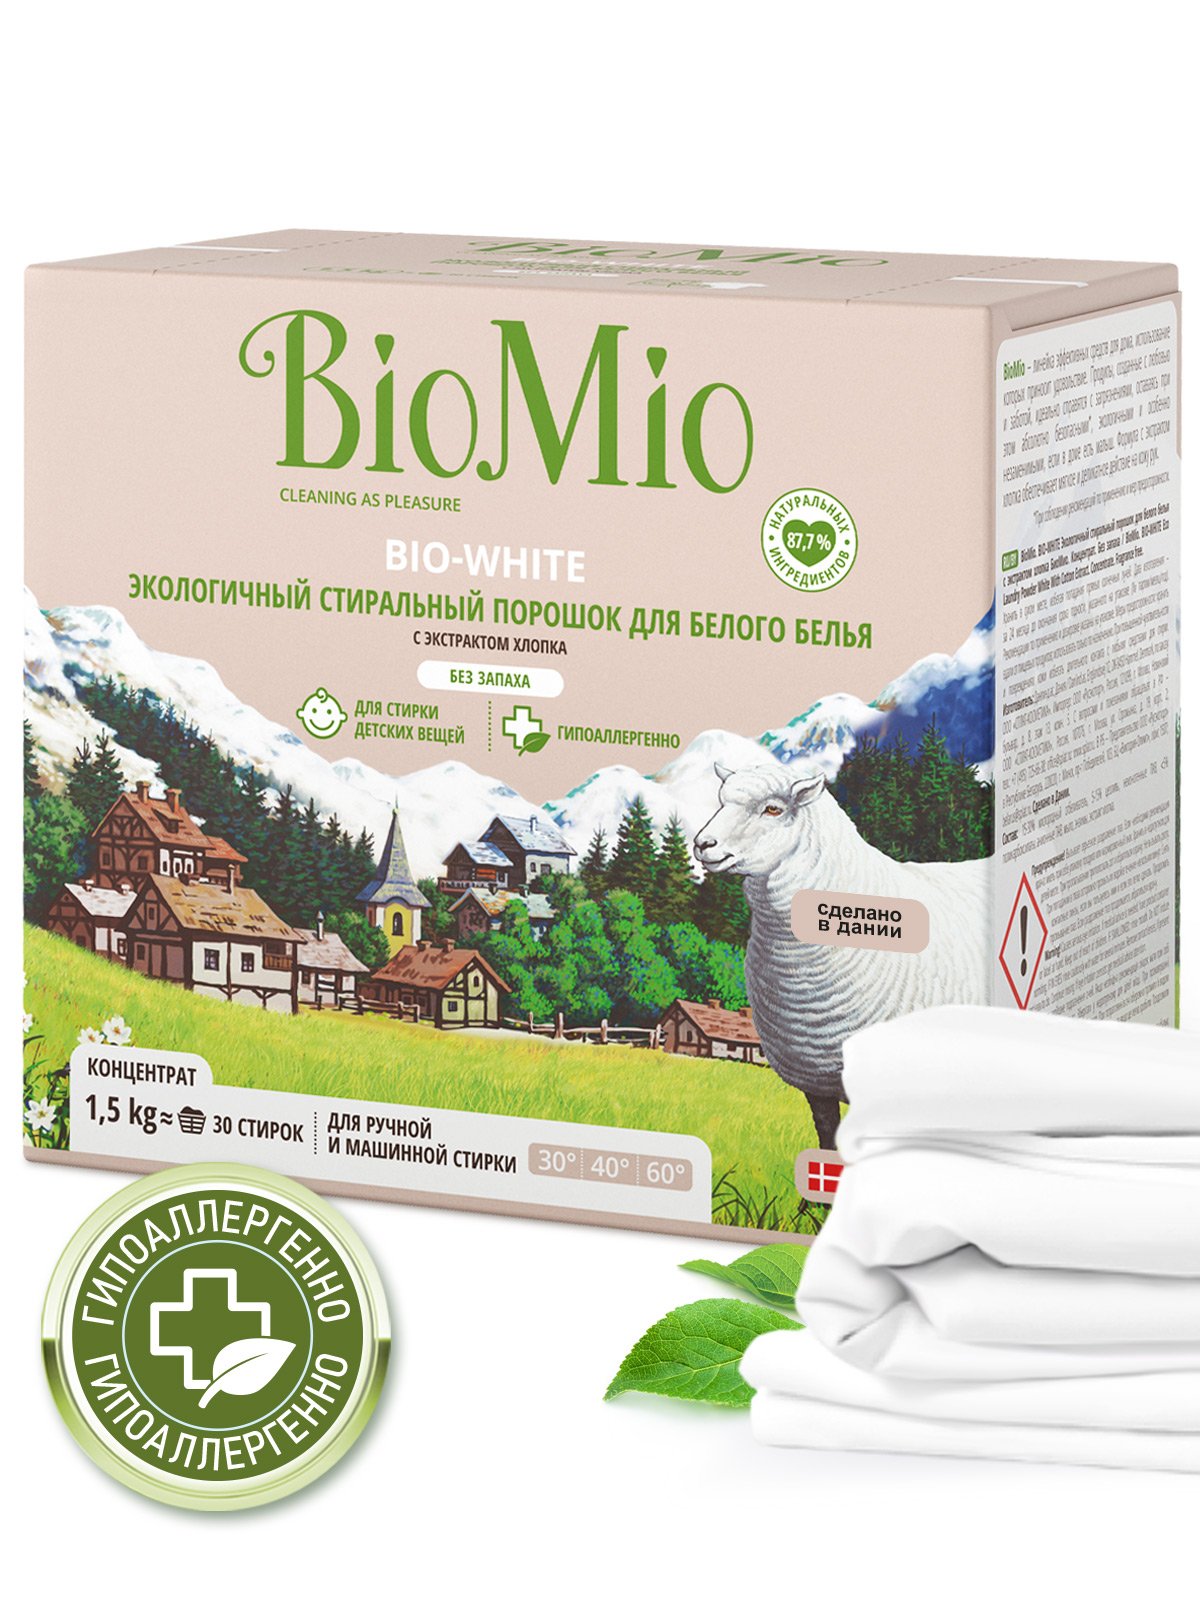 Пральний порошок для білої білизни BioMio Bio-White, концентрат, 1,5 кг - фото 5